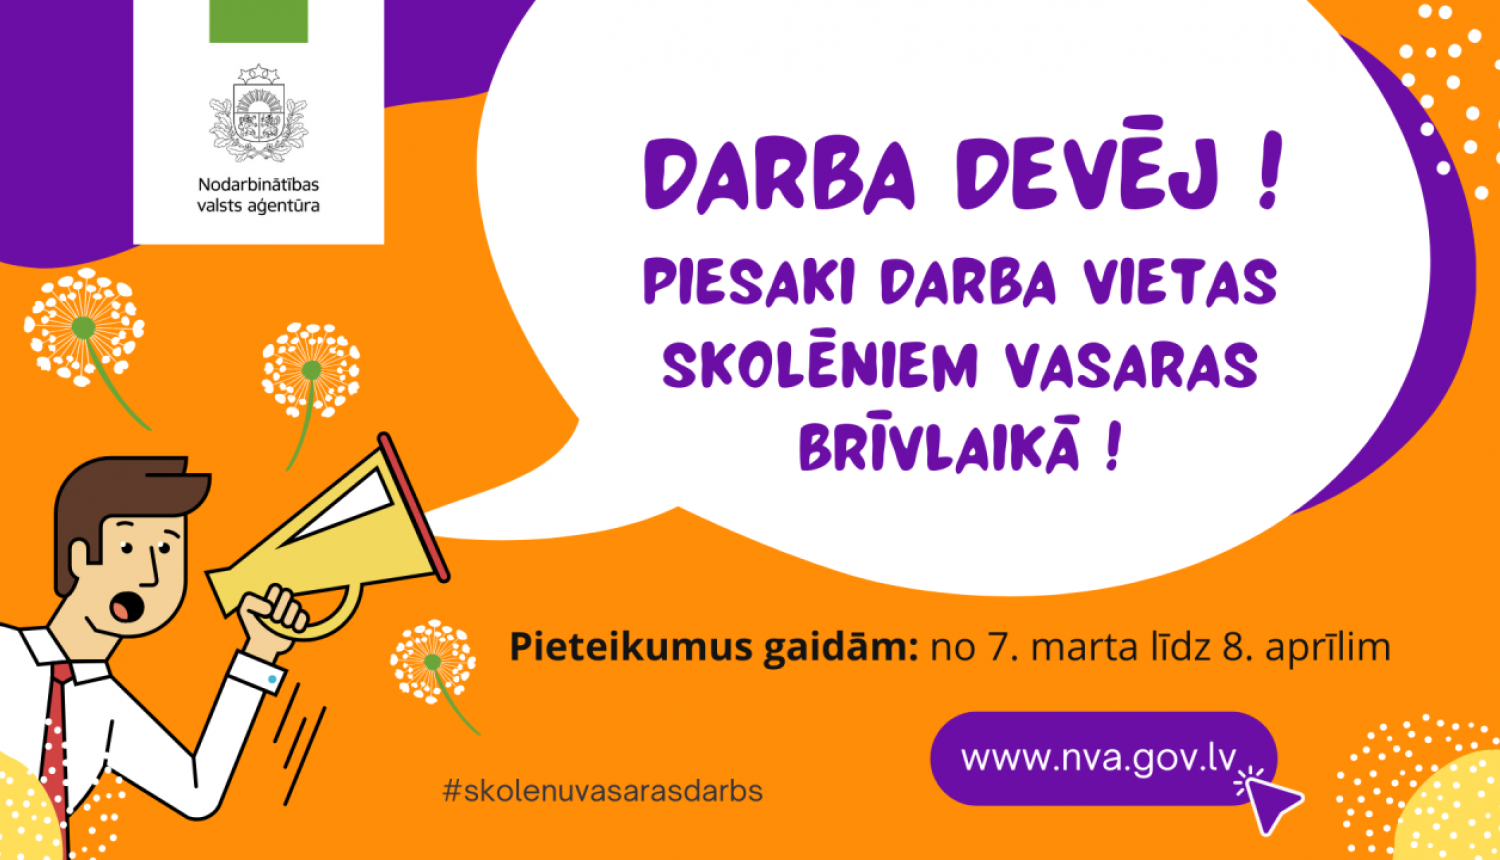 Nodarbinātības valsts aģentūras (NVA) filiāles visā Latvijā no 7. marta līdz 8.aprīlim pieņem darba devēju pieteikumus skolēnu nodarbinātības pasākuma īstenošanai 2022.gada vasarā.